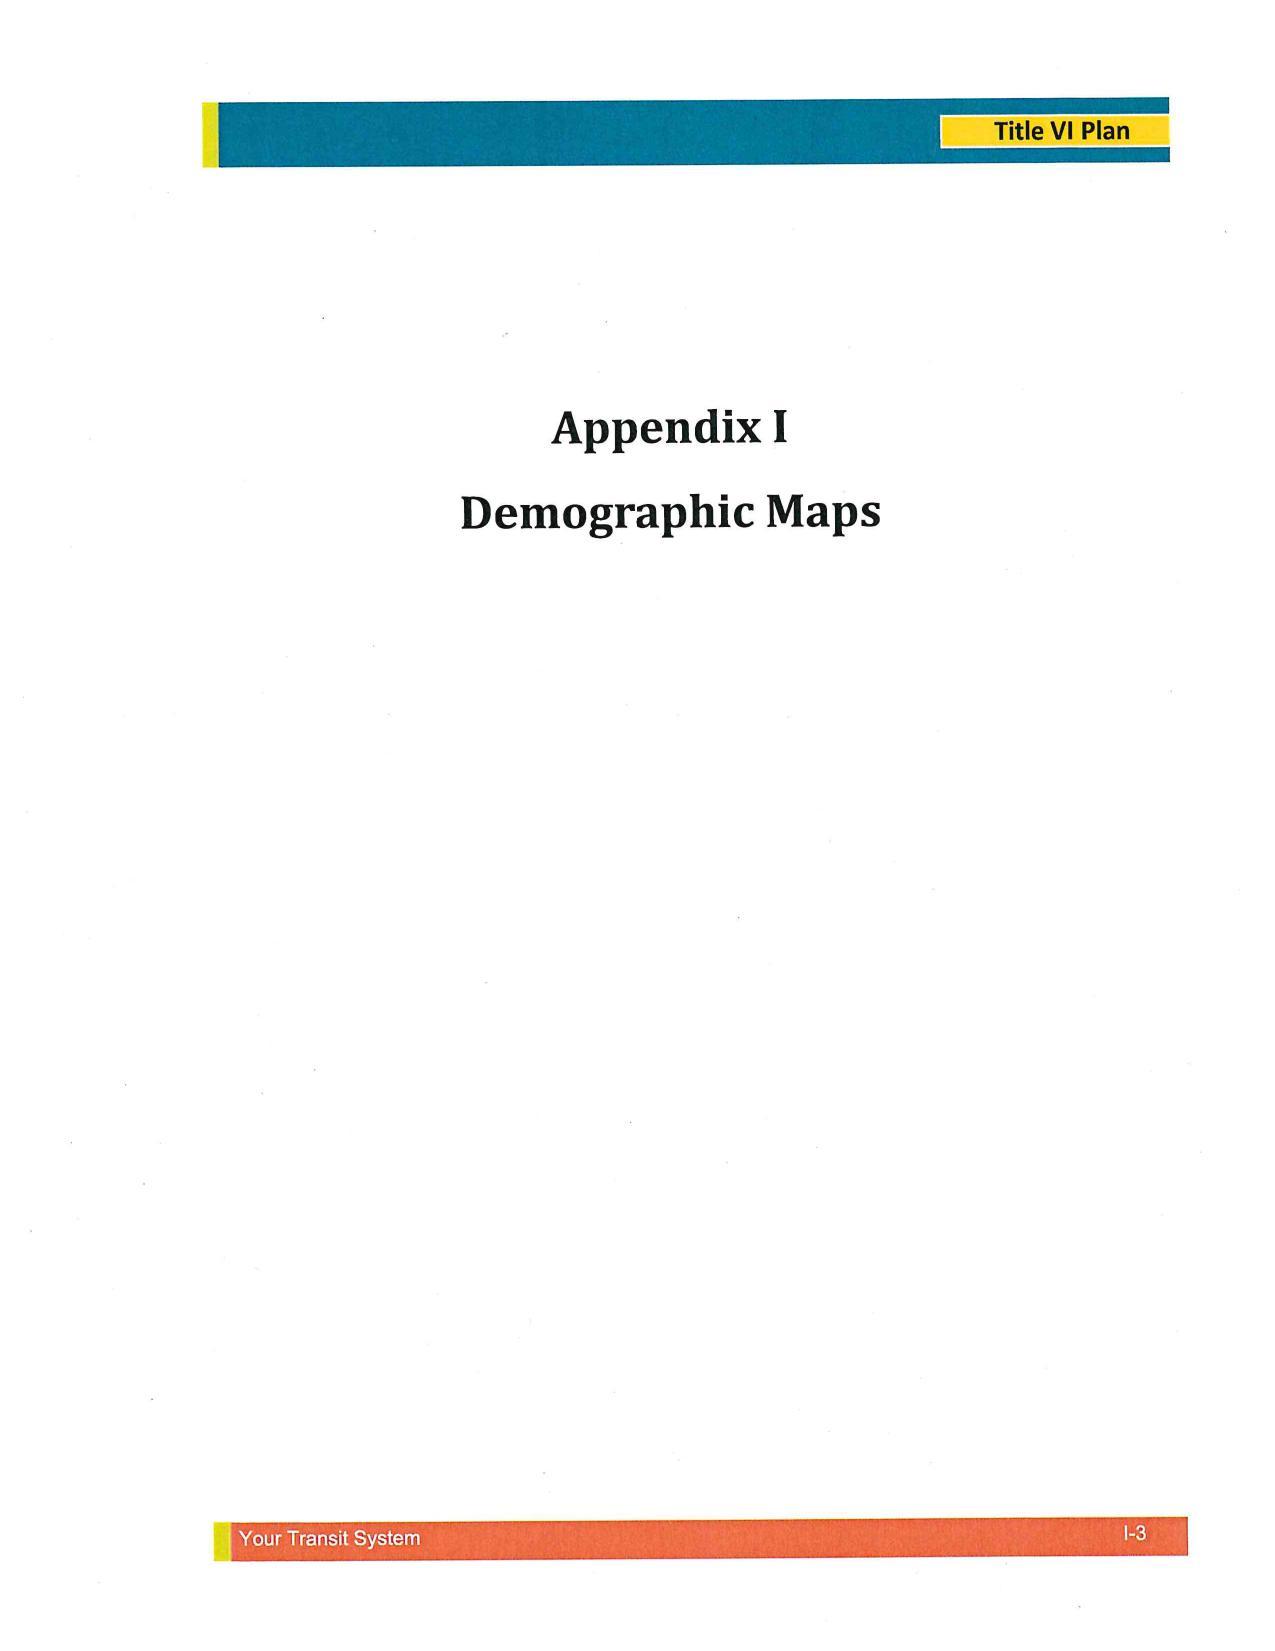 Appendix I: Demographic Maps